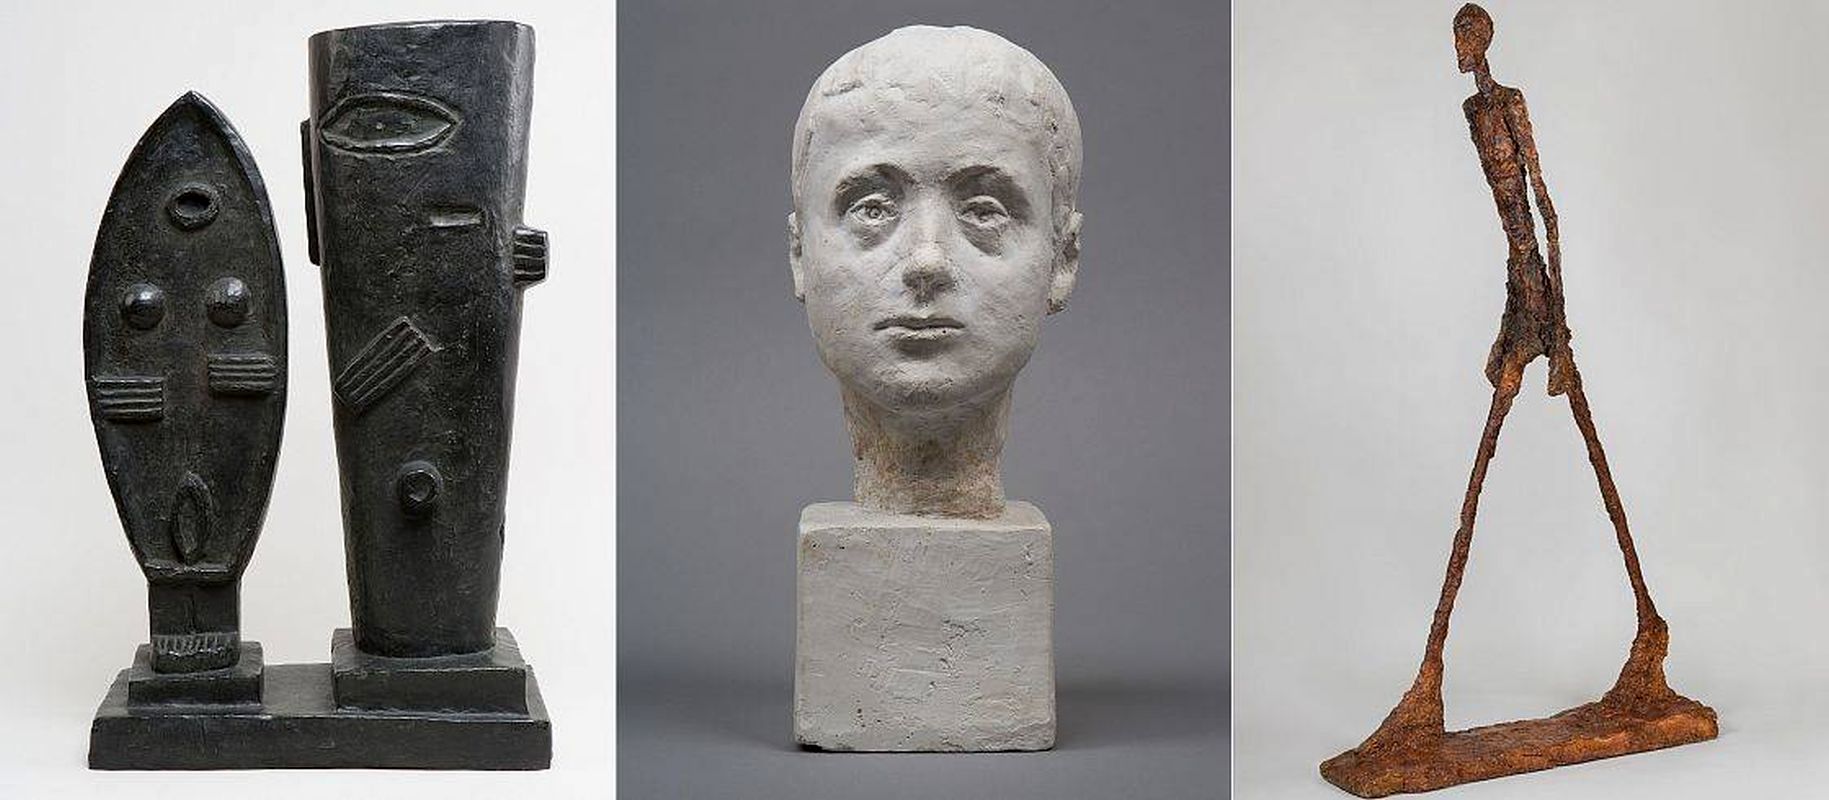 نمایشگاه آثار آلبرتو جیاکومتی در موزه گوگنهایم بیلبائو/ گزارش تصویری